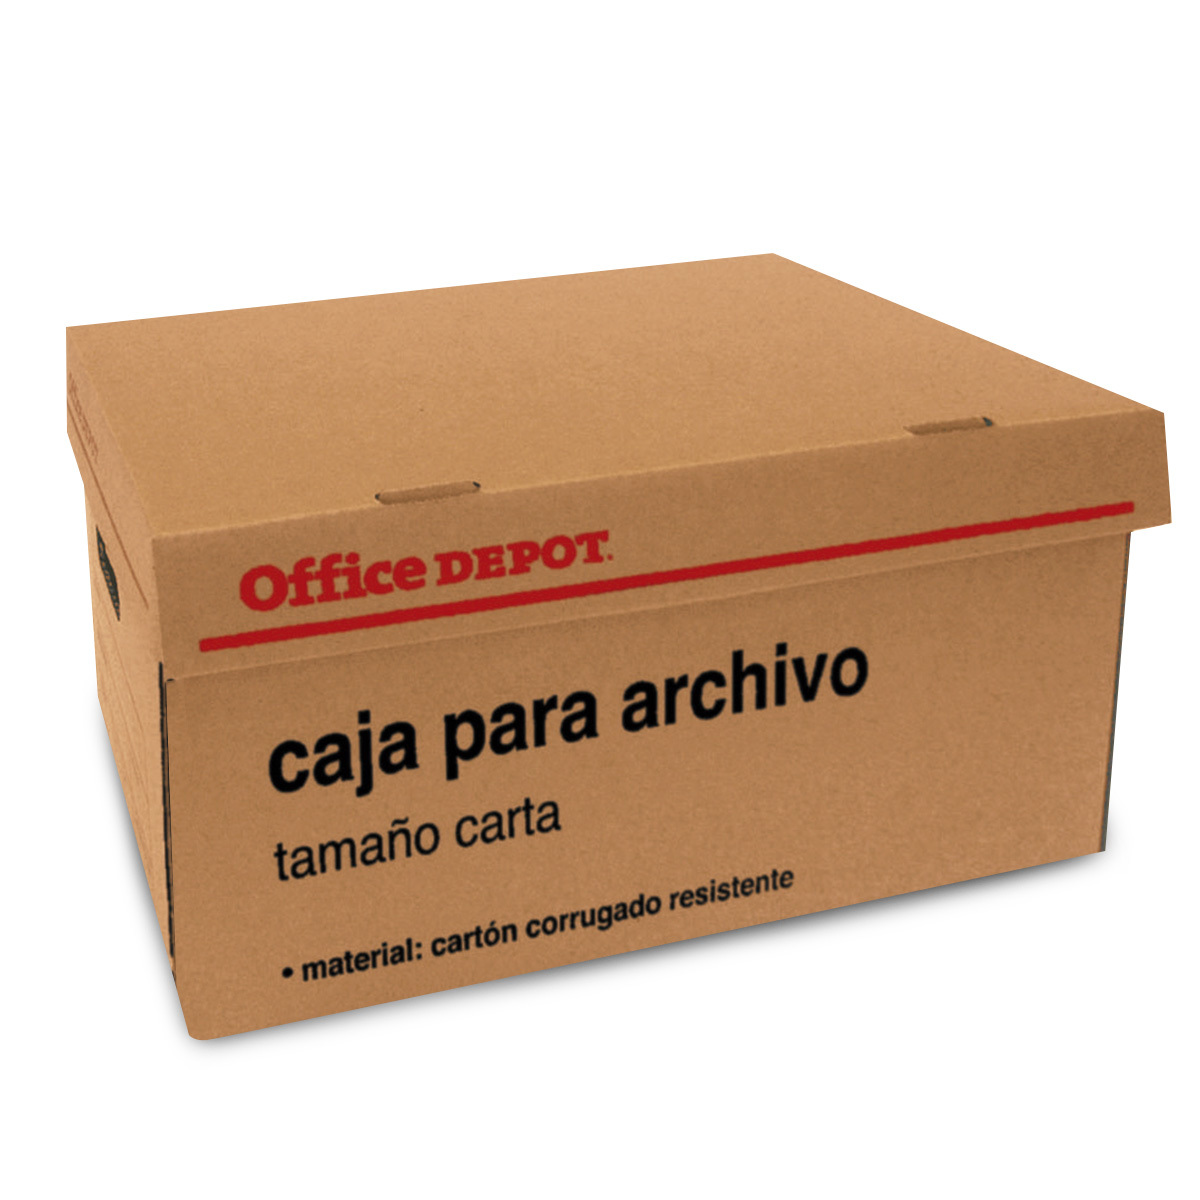 Arriba 101+ imagen caja para archivo office depot